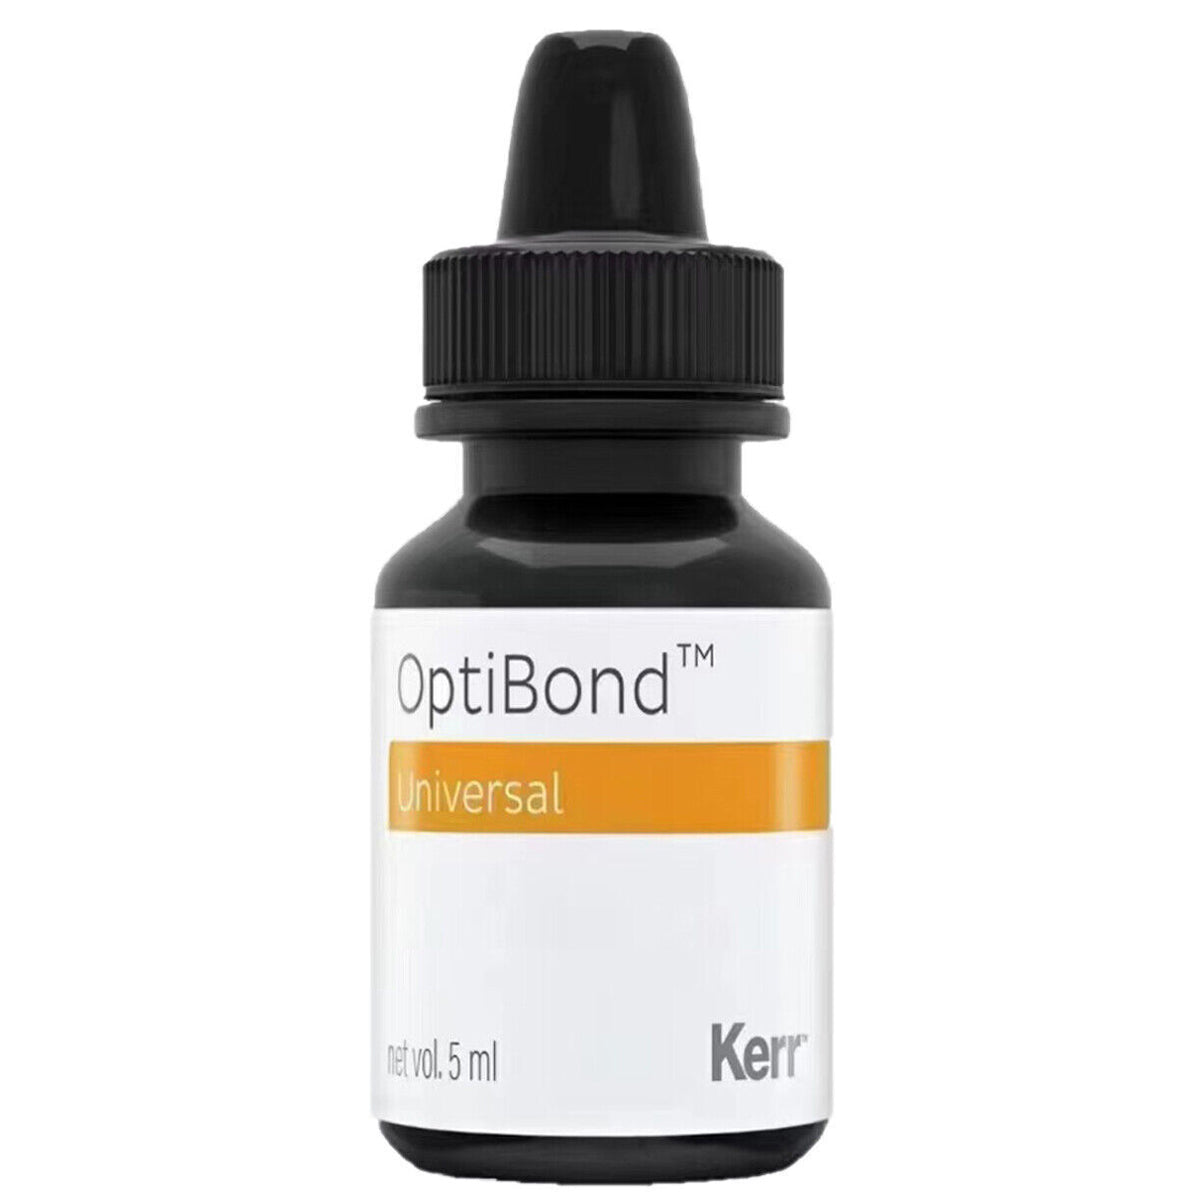 kerr-optibond-universal-adhesive-light-cure-dental-adhesive